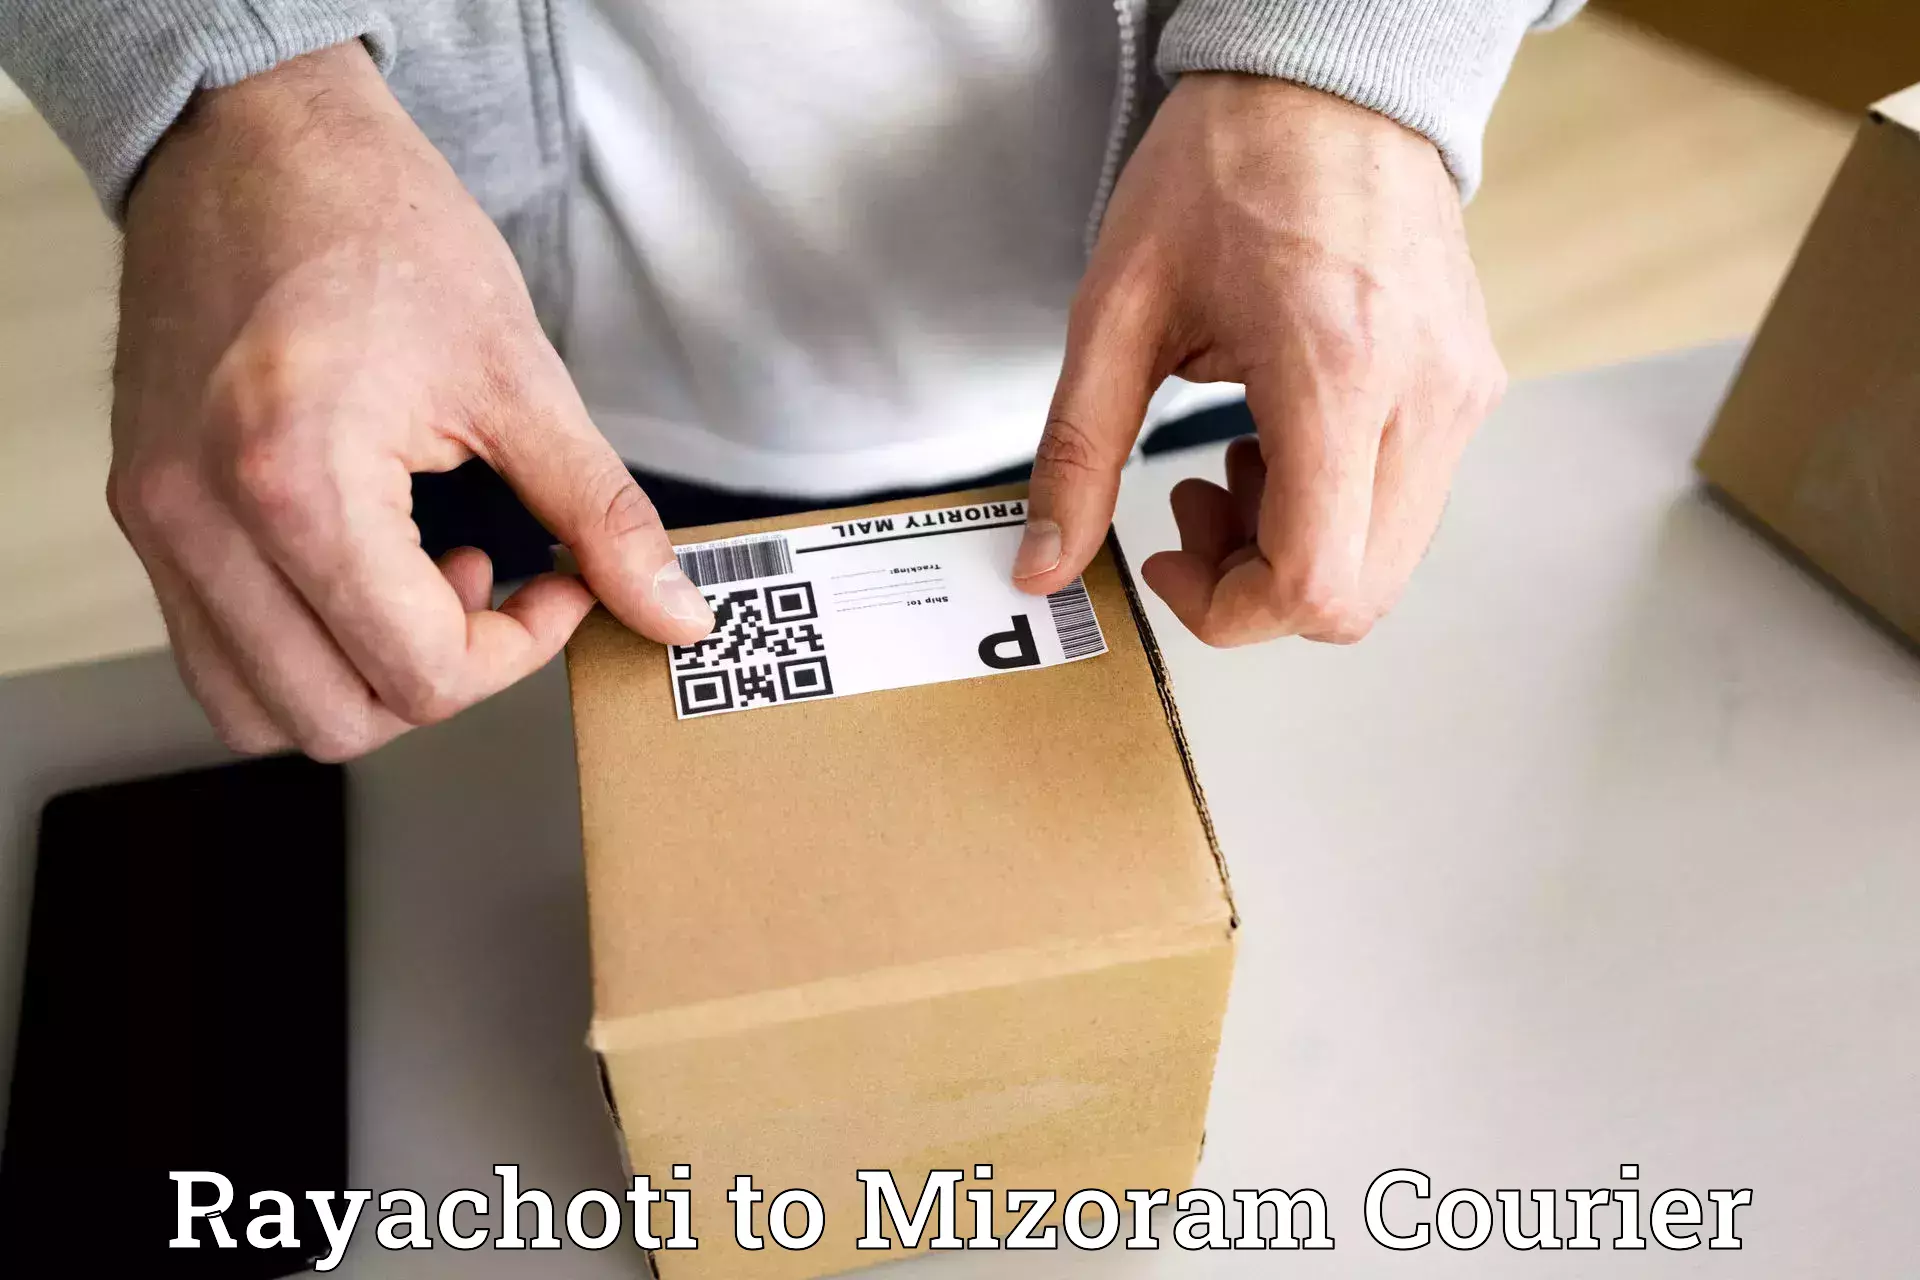 Shipping and handling Rayachoti to Mizoram